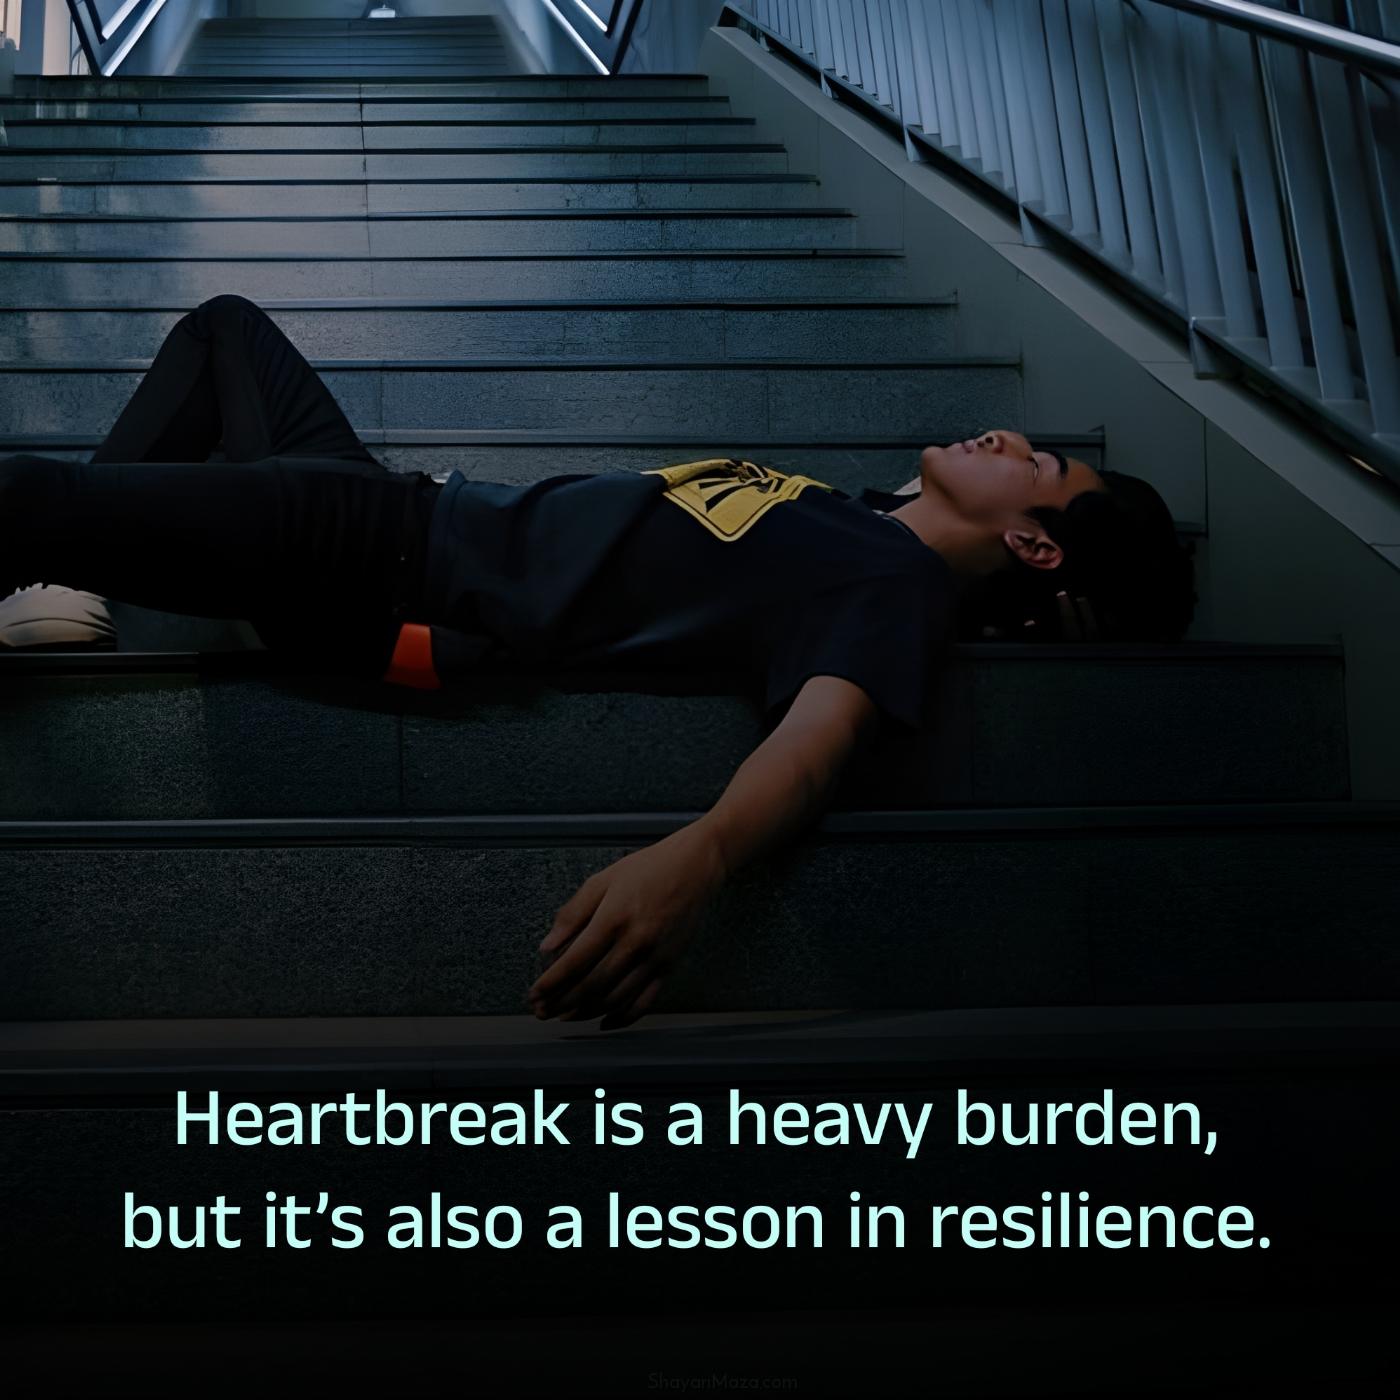 Heartbreak is a heavy burden